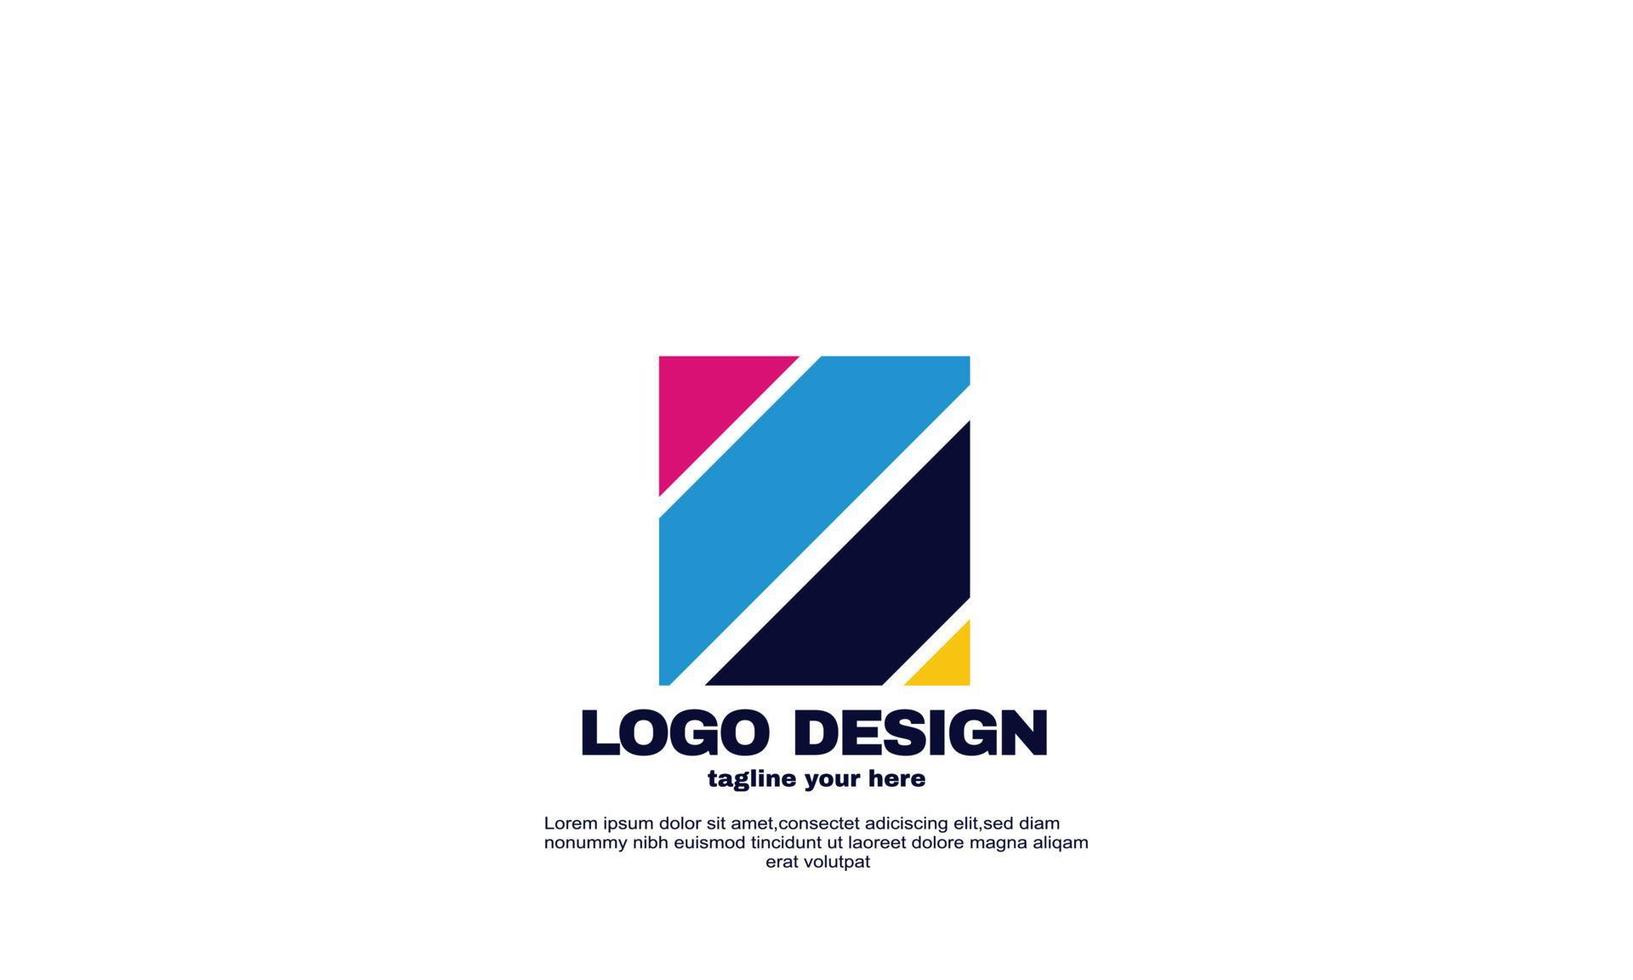 Stock vector plantilla de diseño de logotipo de impresión digital